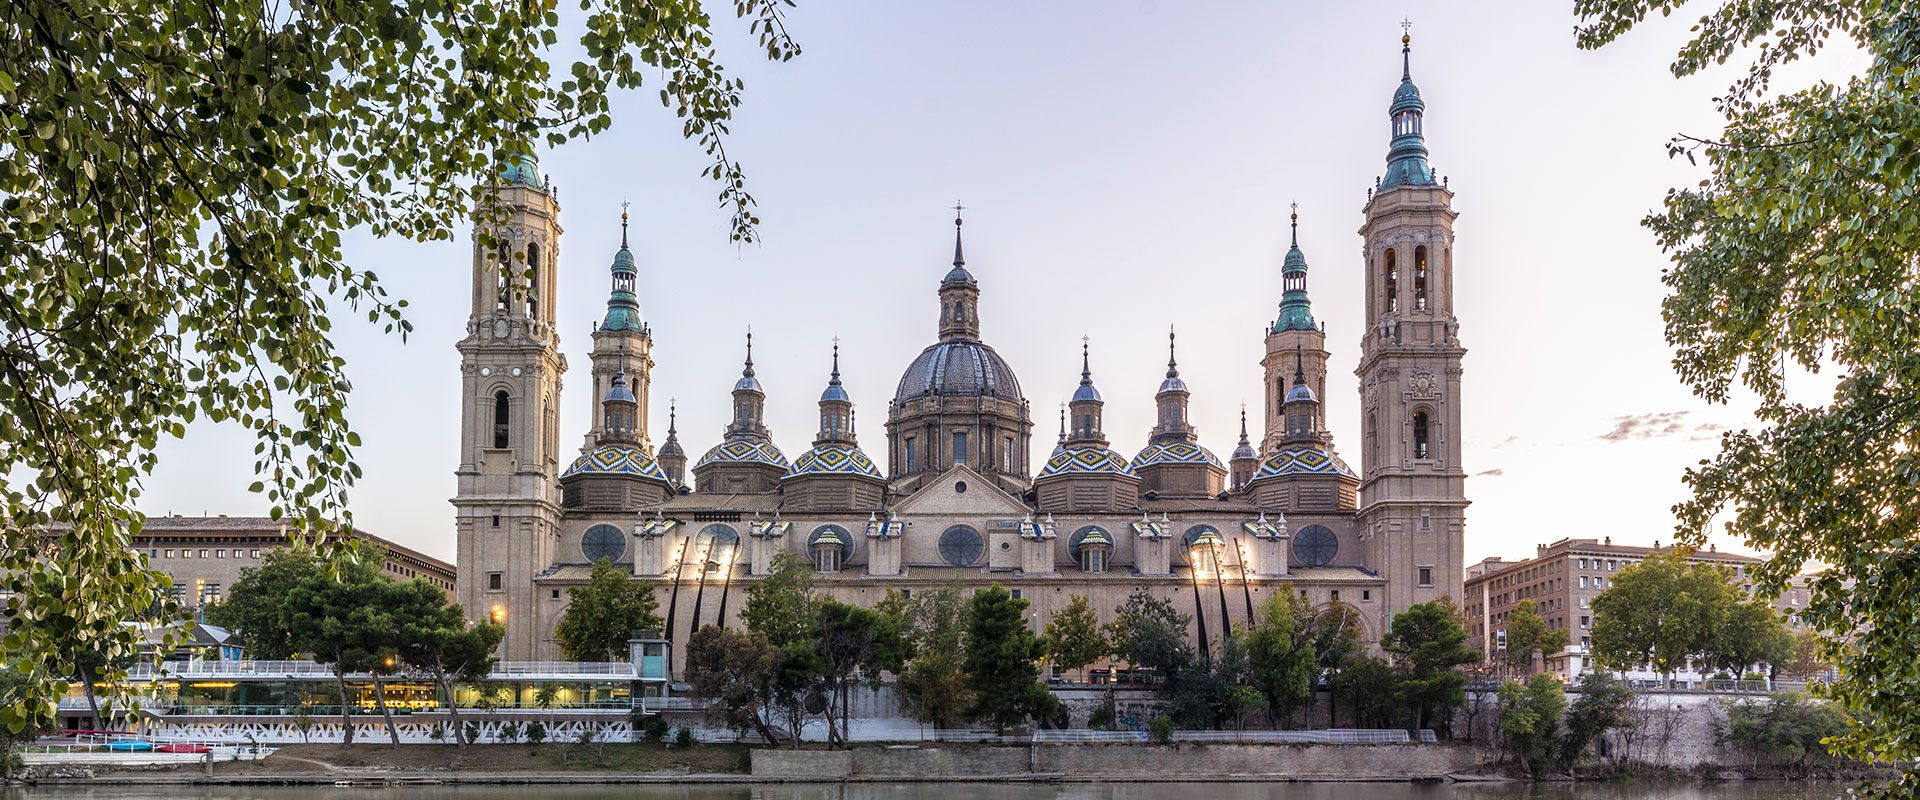 El Pilar - Catedrales de Zaragoza